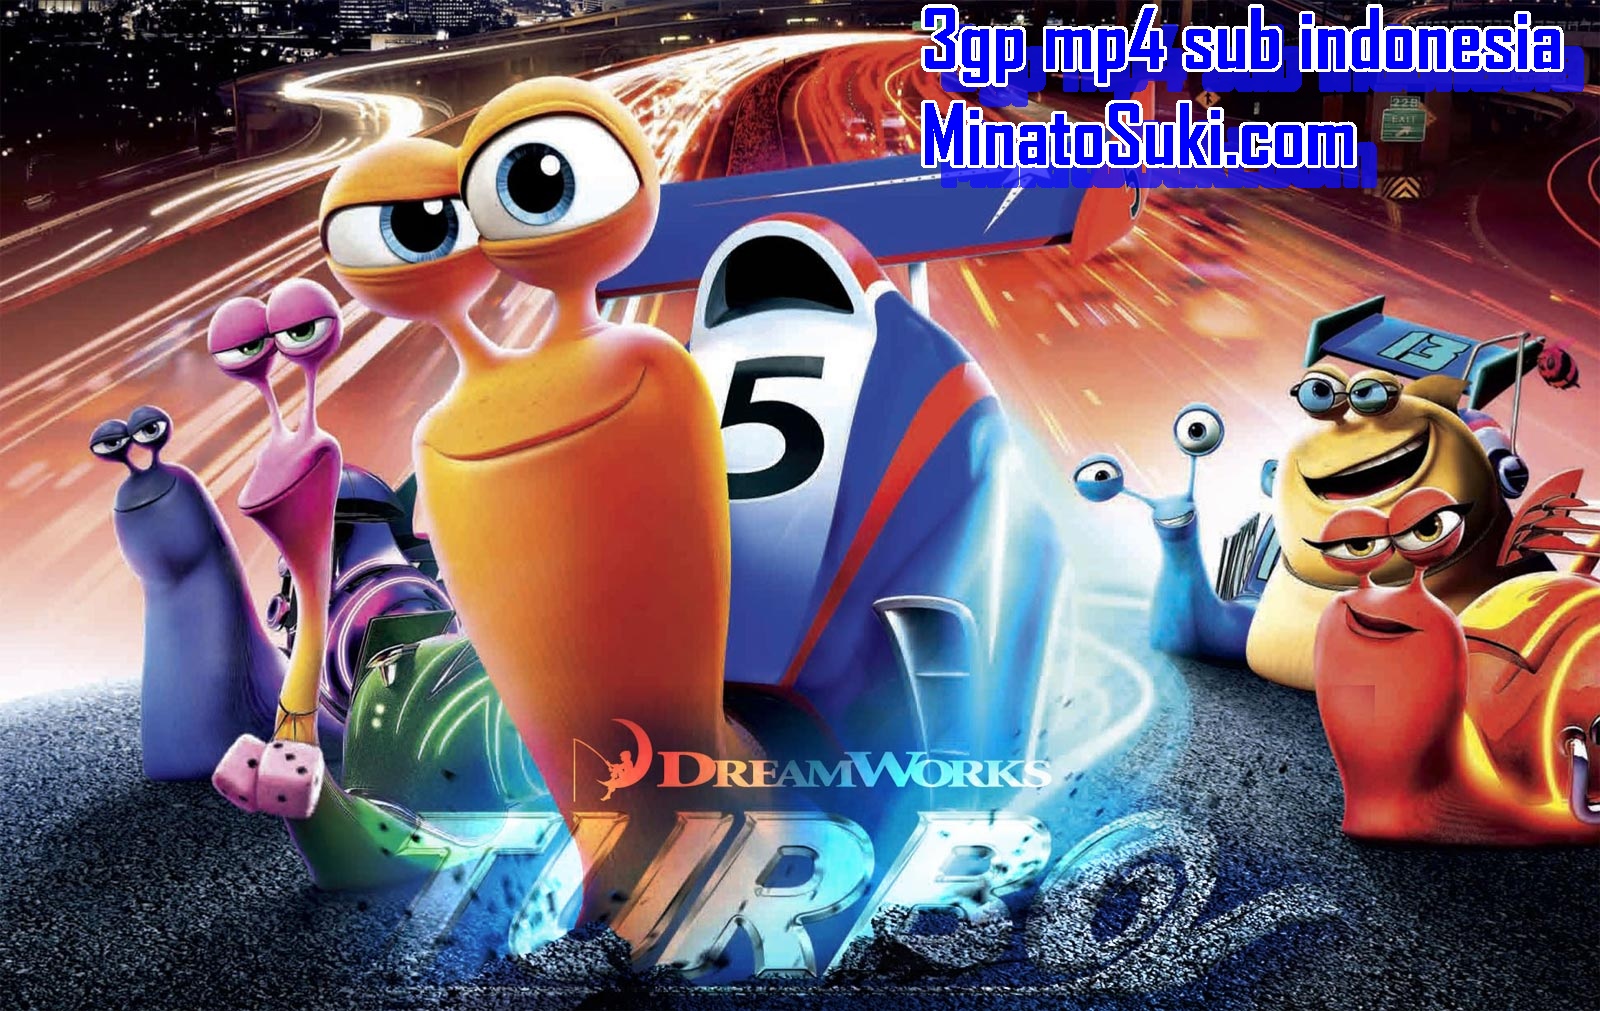 Turbo 3gp mp4 subtitle indonesia.jpg